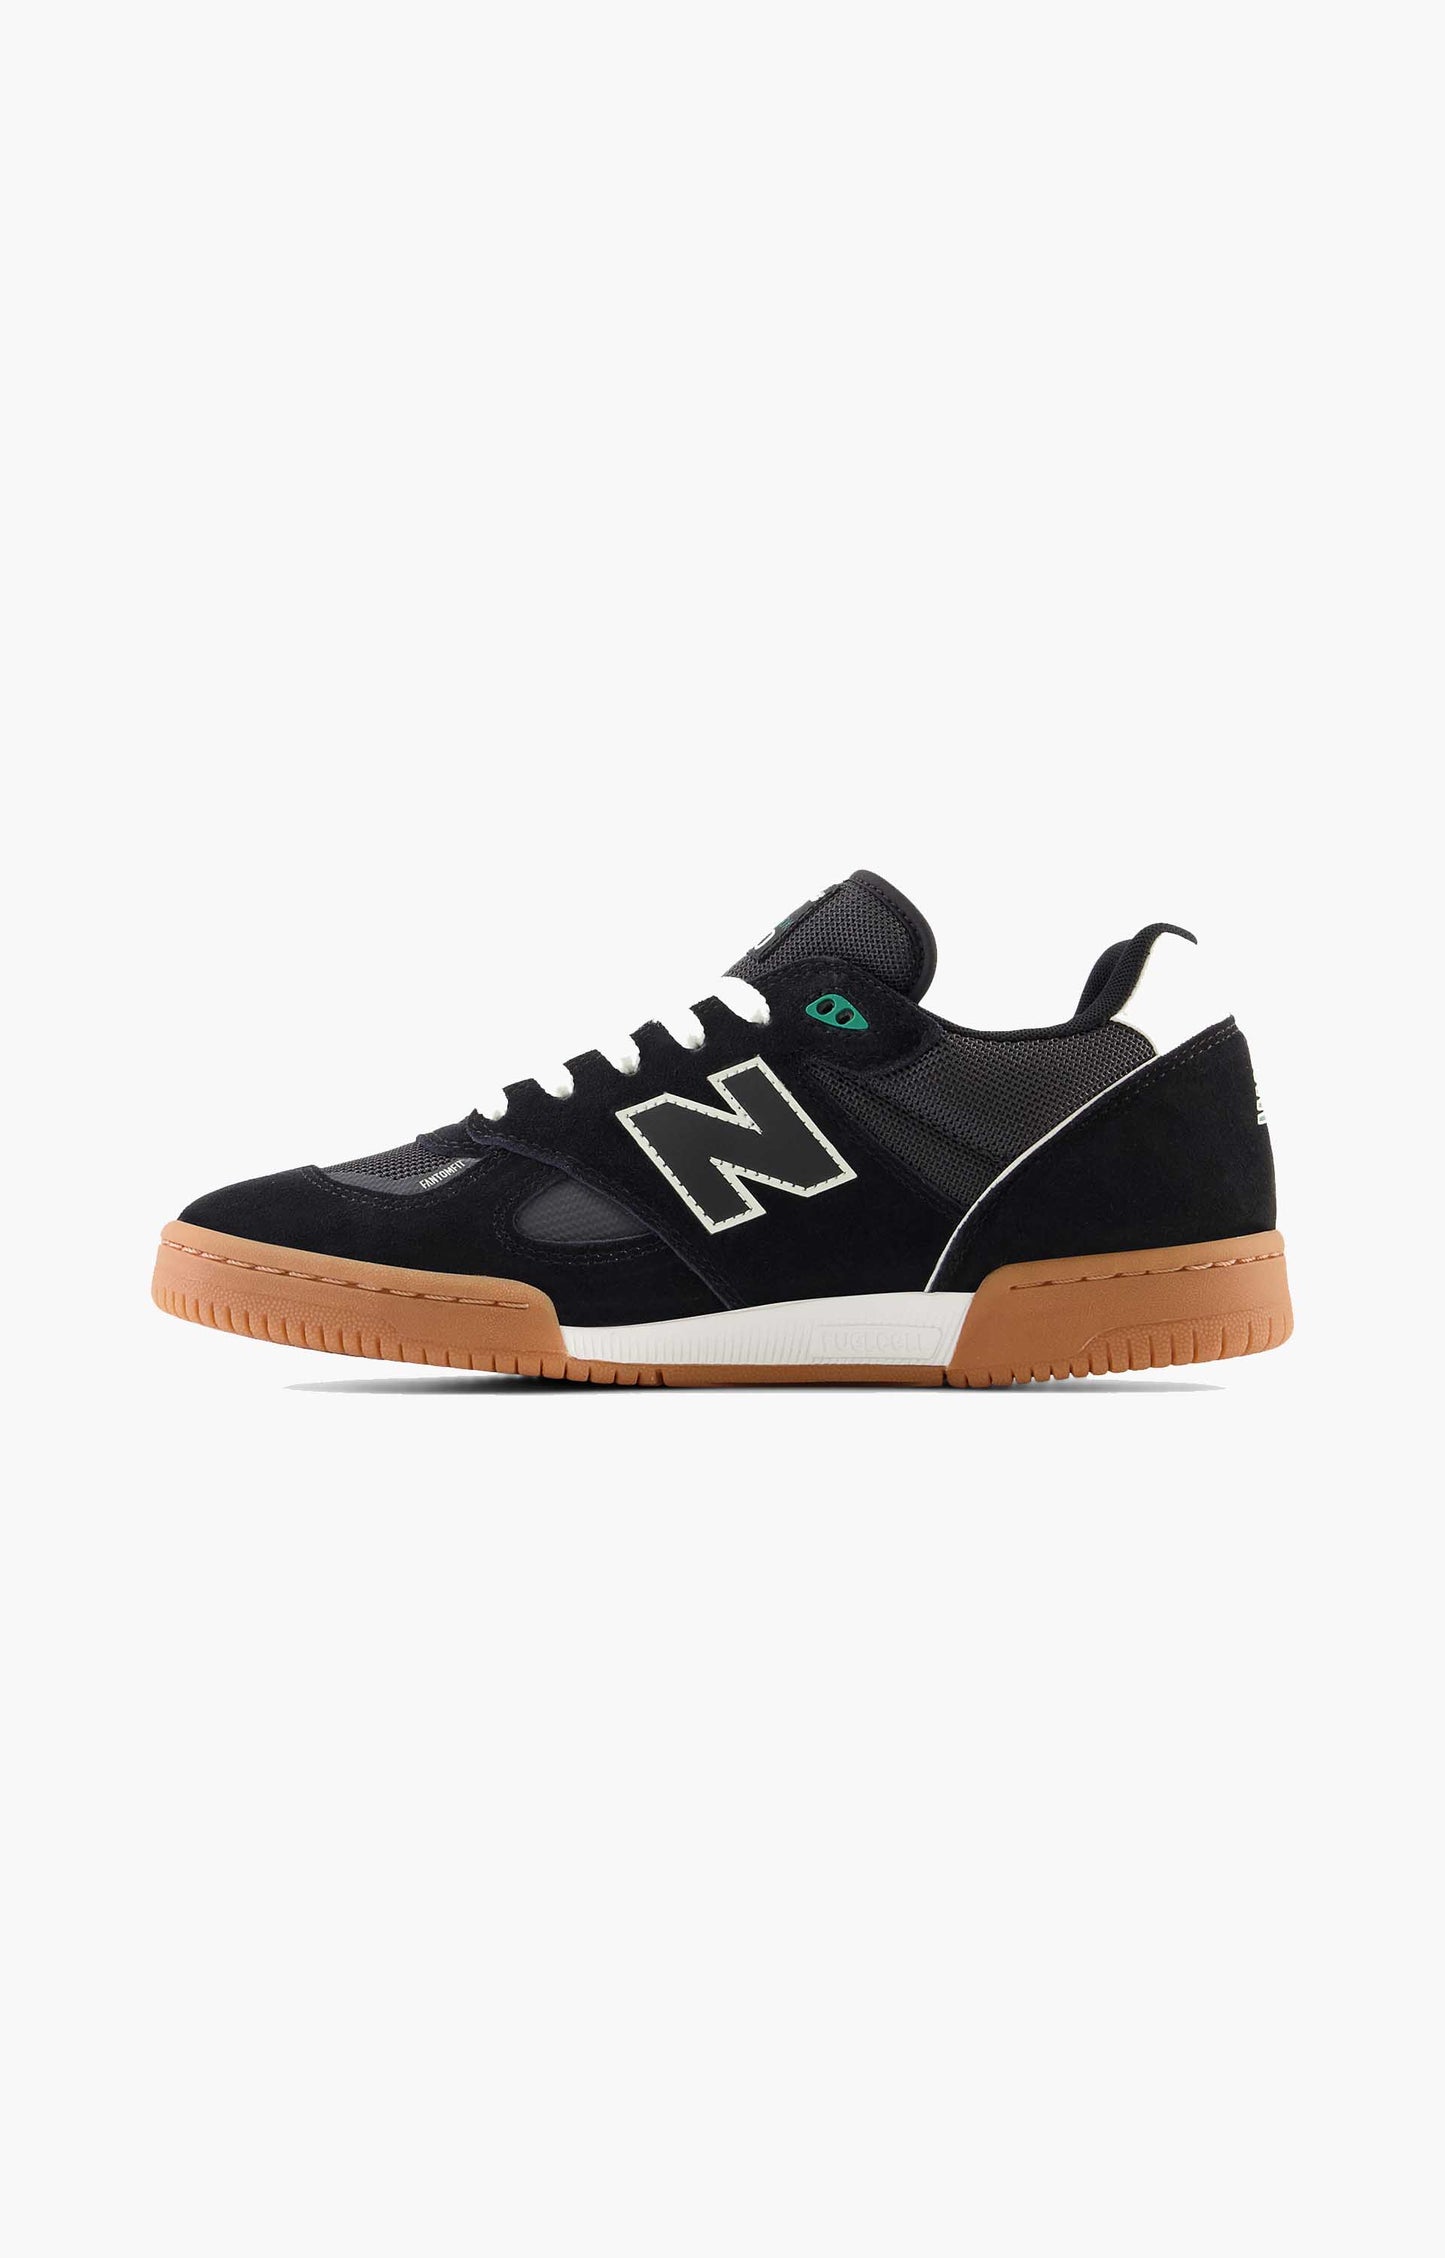 New Balance Numeric Tom Knox NM600BNW Shoe, Black/Gum